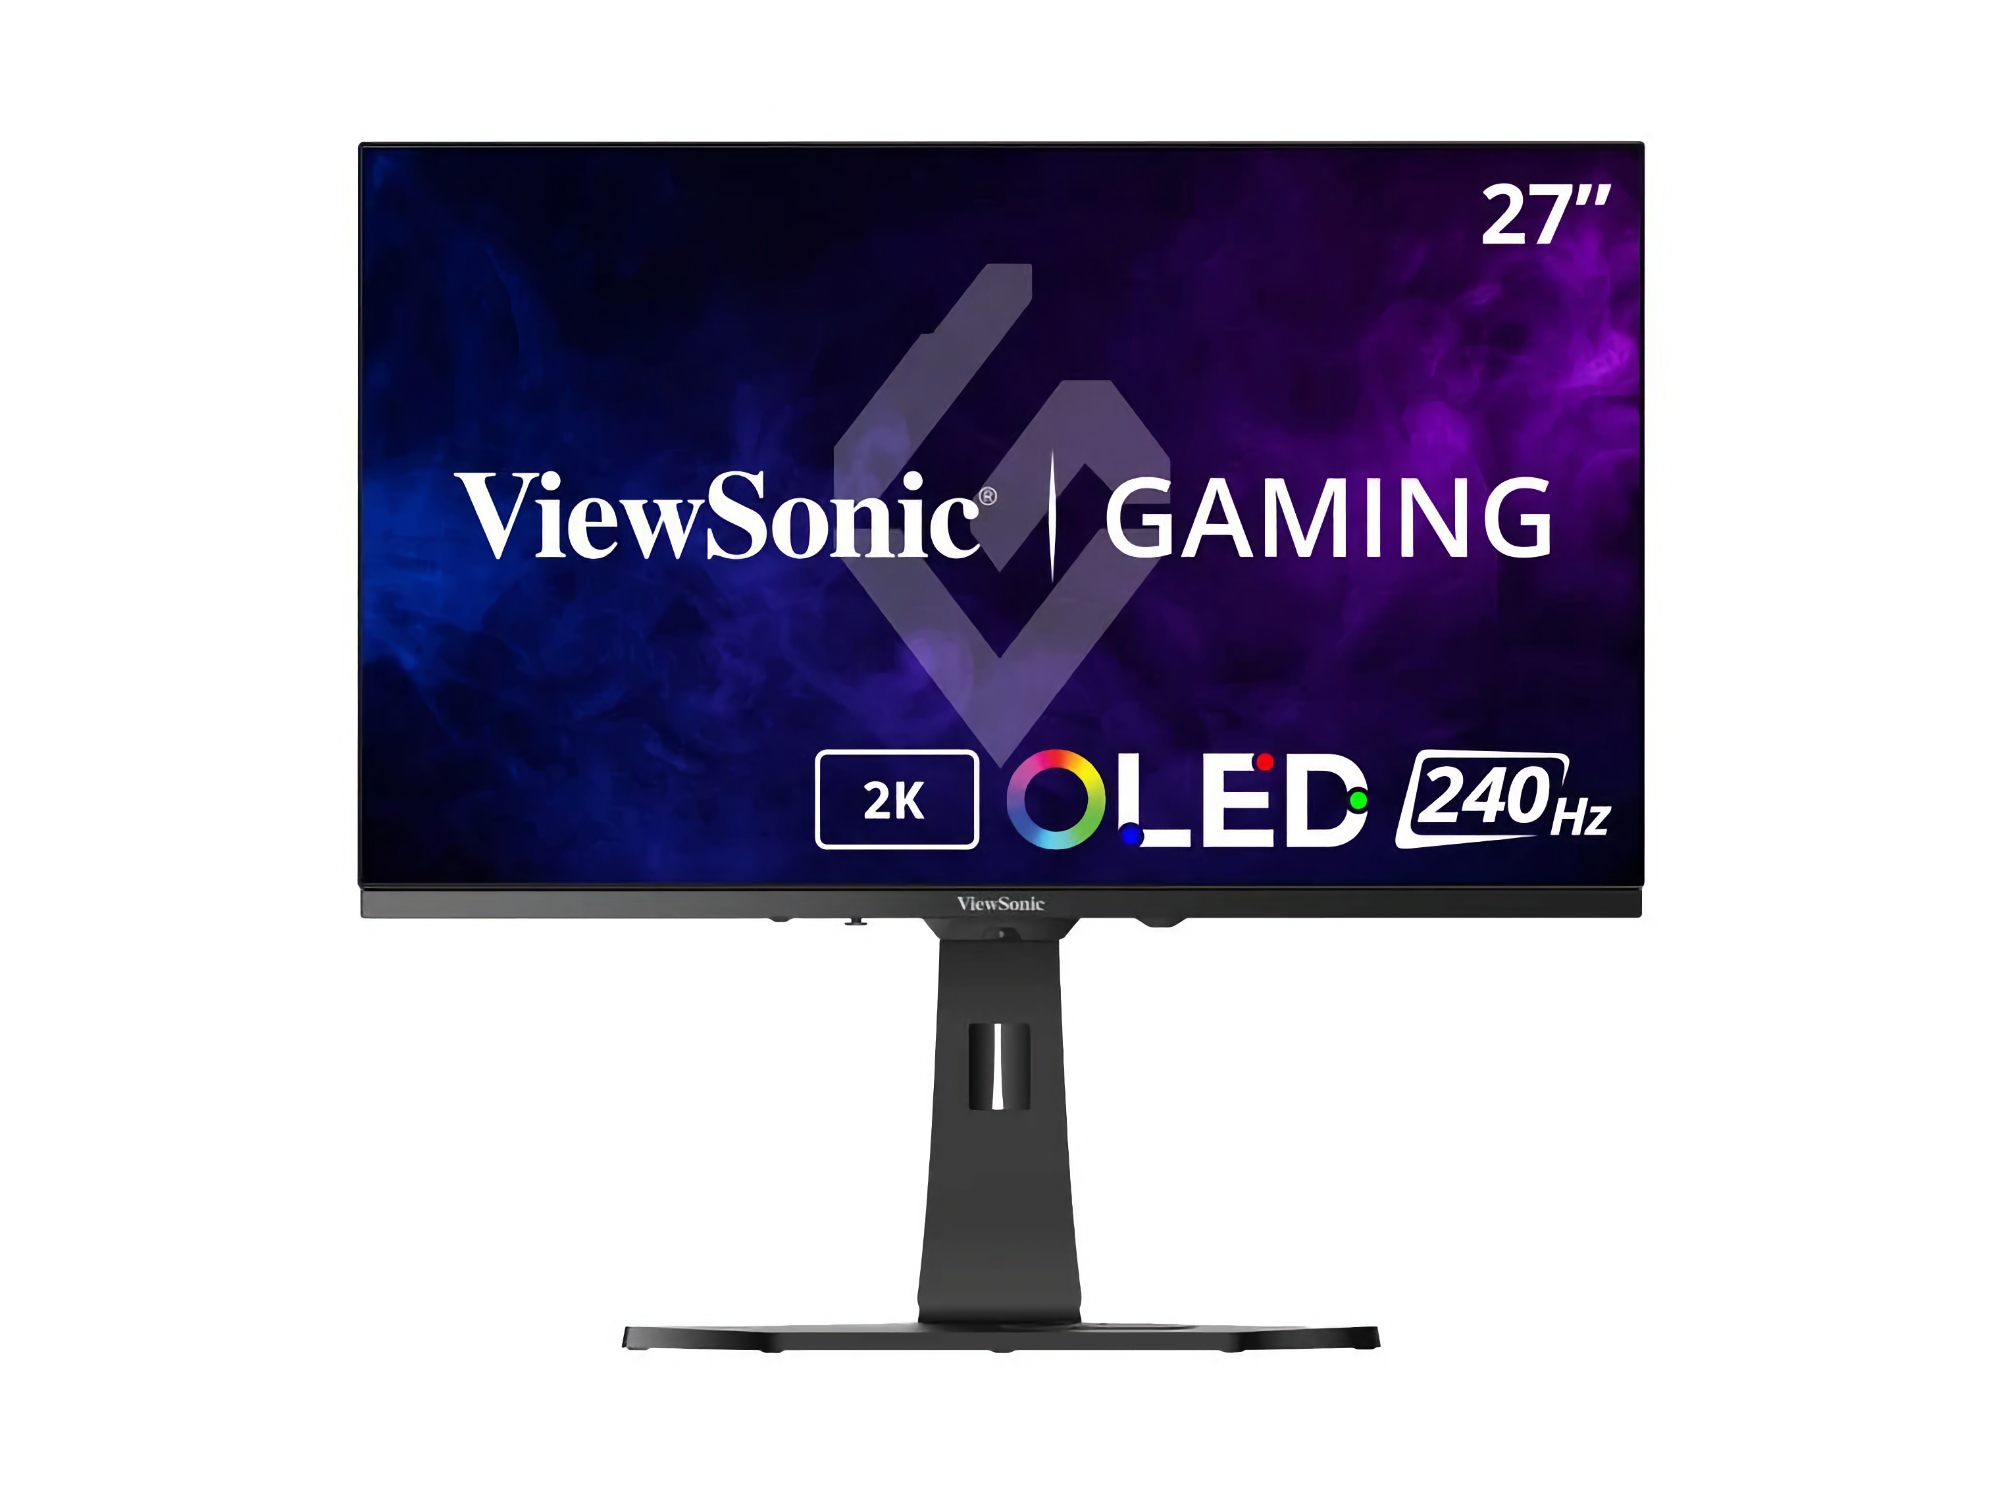 ViewSonic har presenterat XG272-2K: en gamingmonitor med en 240Hz OLED-skärm